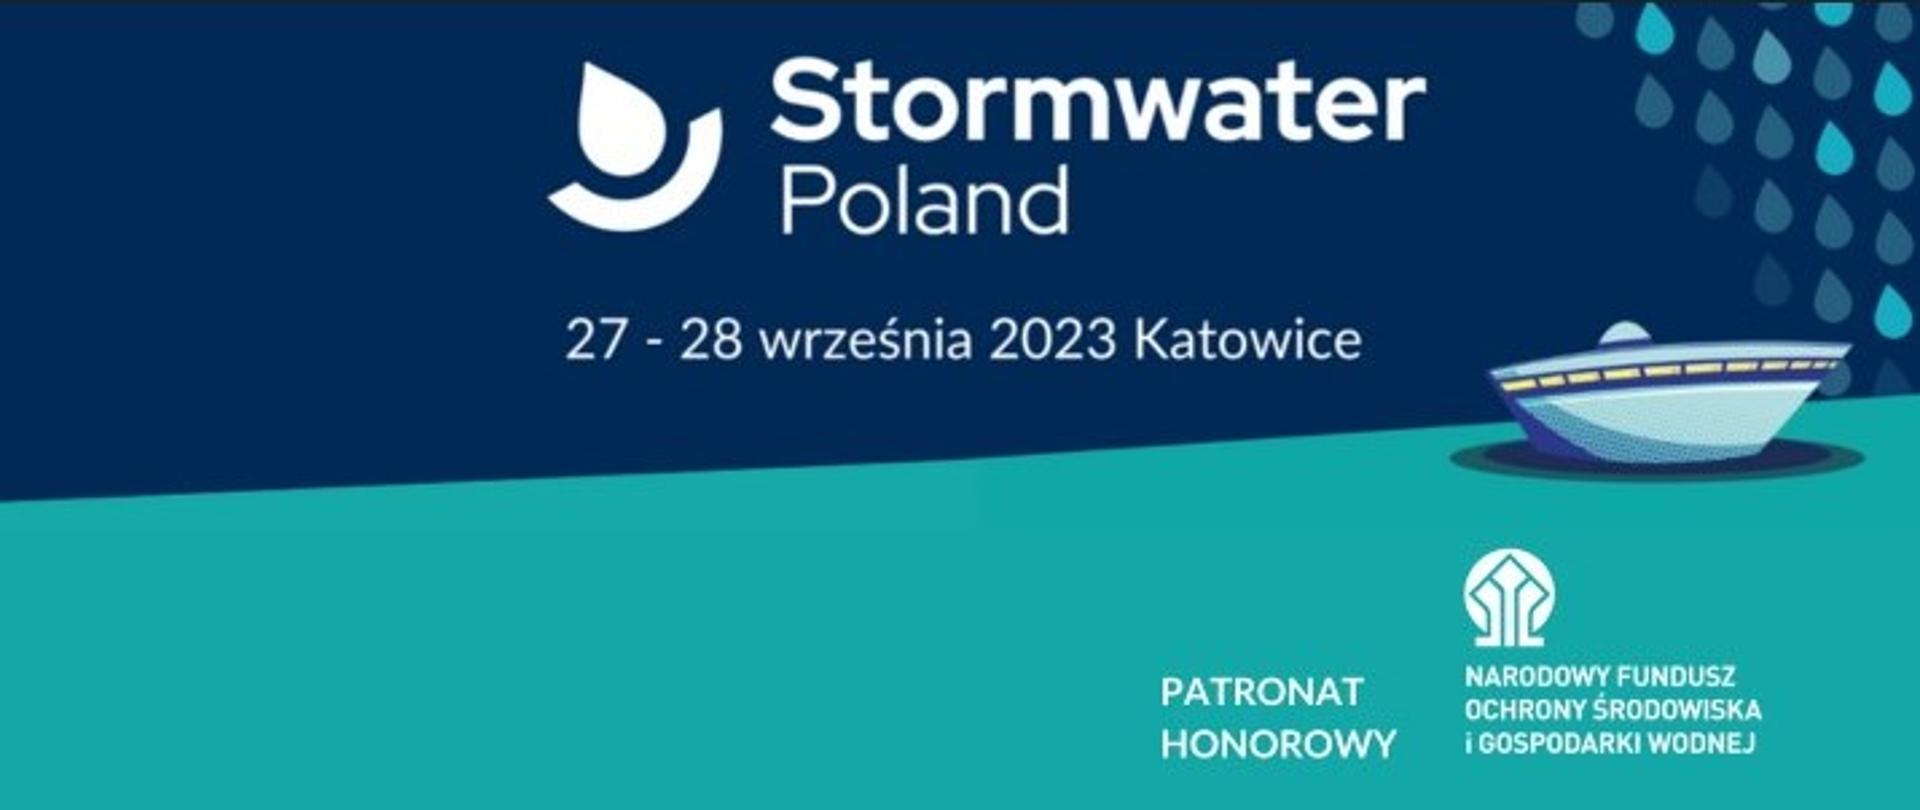 Grafika informacyjna wydarzenia Stormwater Poland